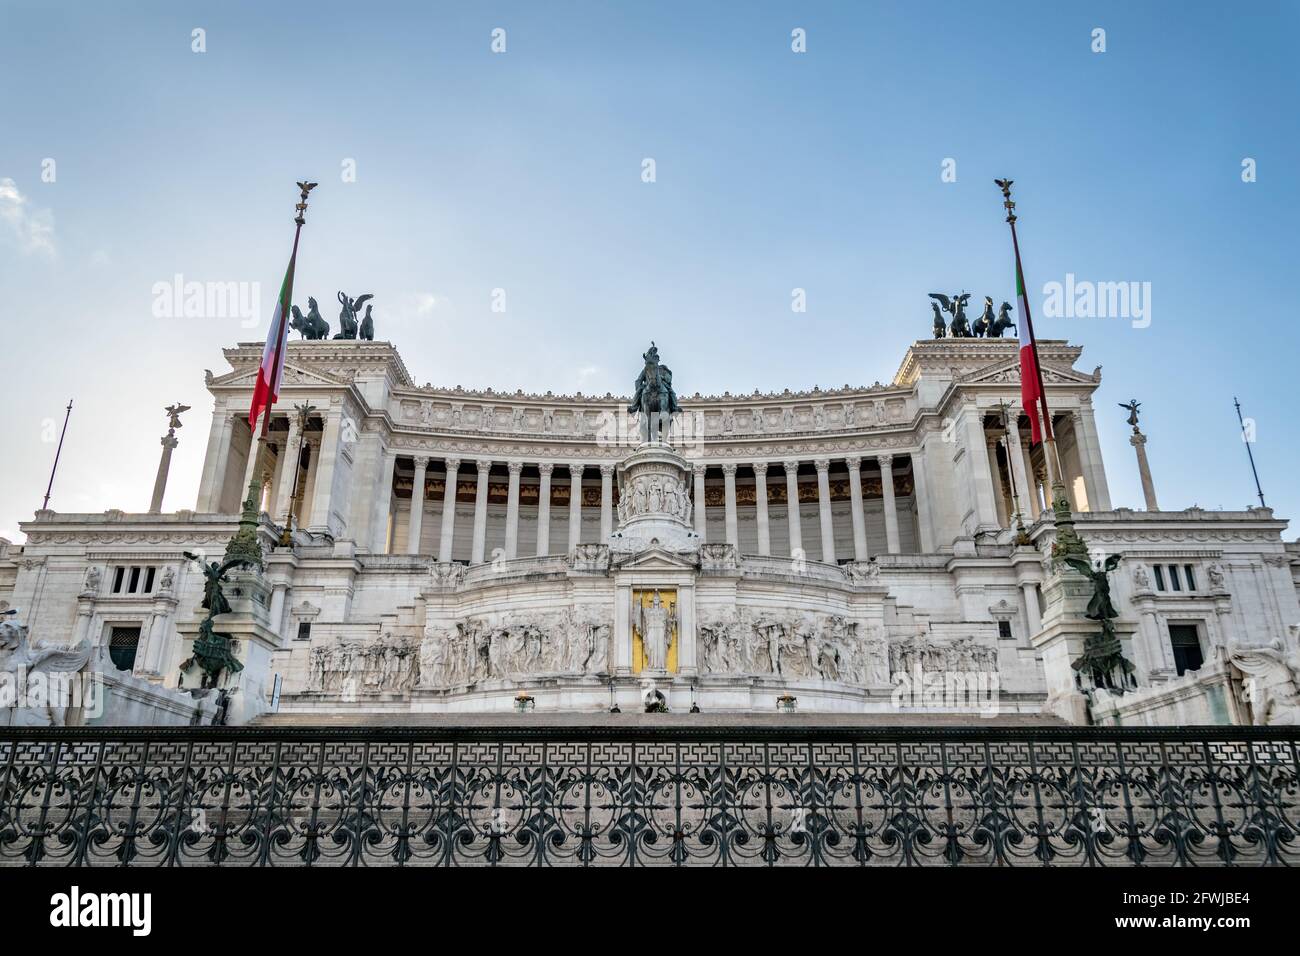 Une vue frontale du monument national Victor Emmanuel II ou Vittoriano dans le centre de Rome Banque D'Images